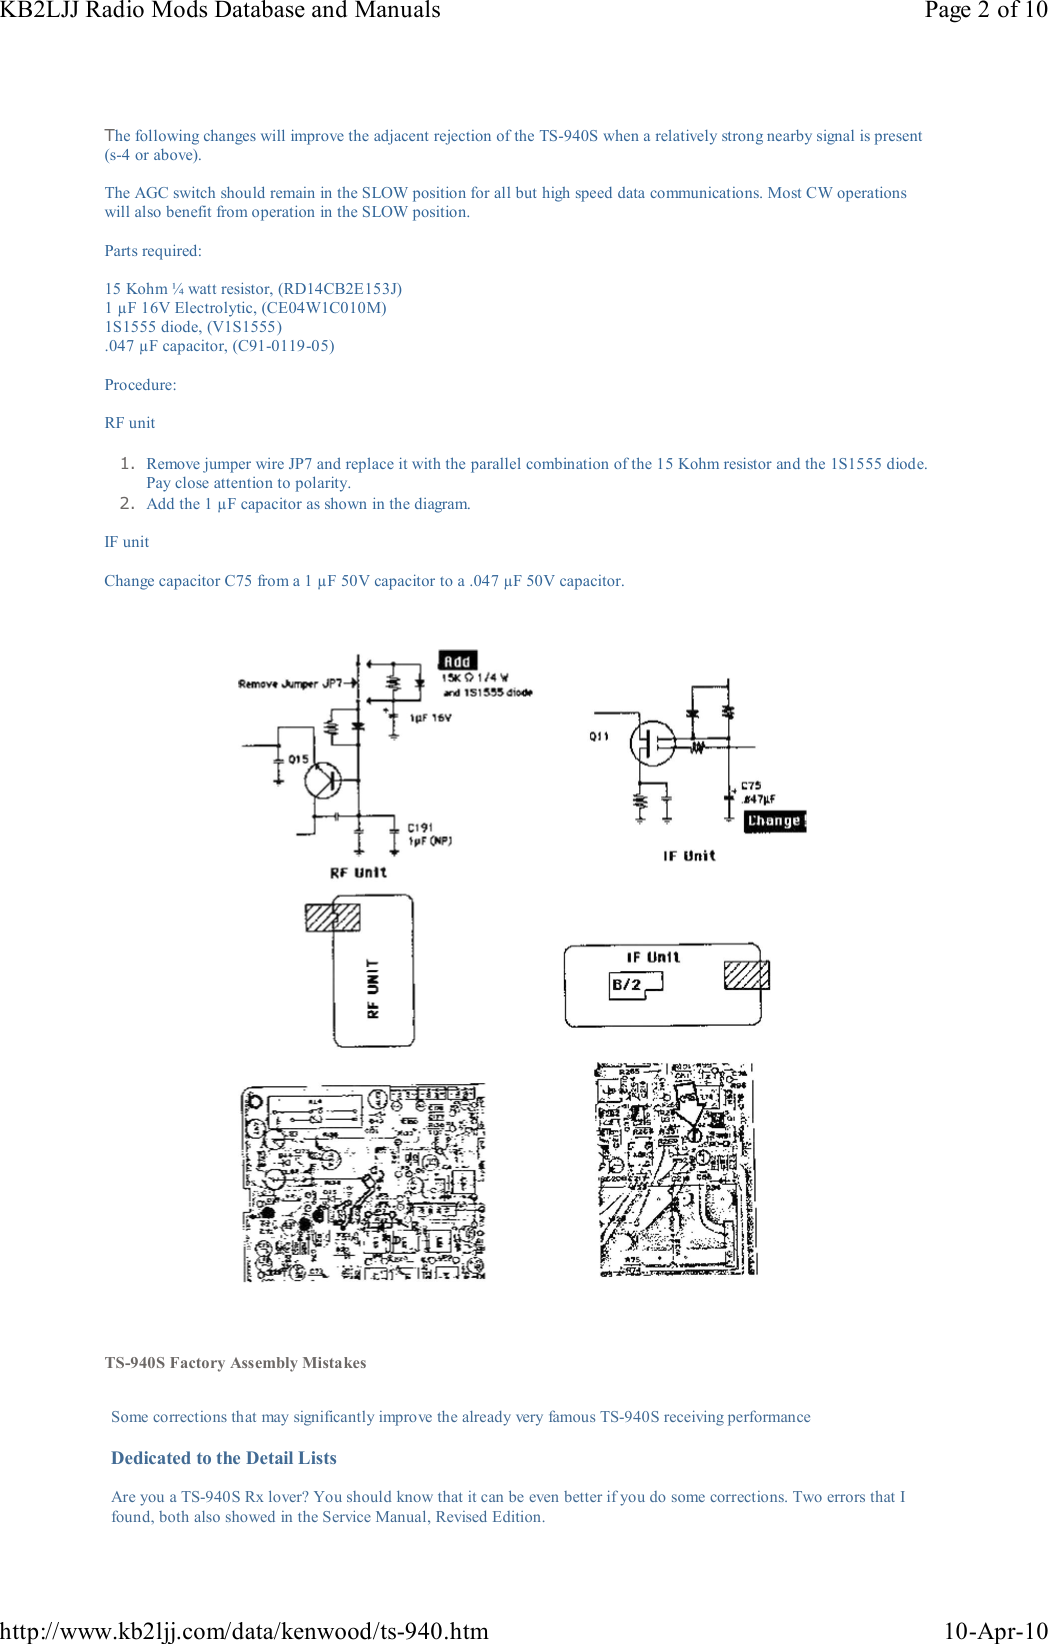 Page 2 of 10 - KENWOOD--TS-940S-MODIFS